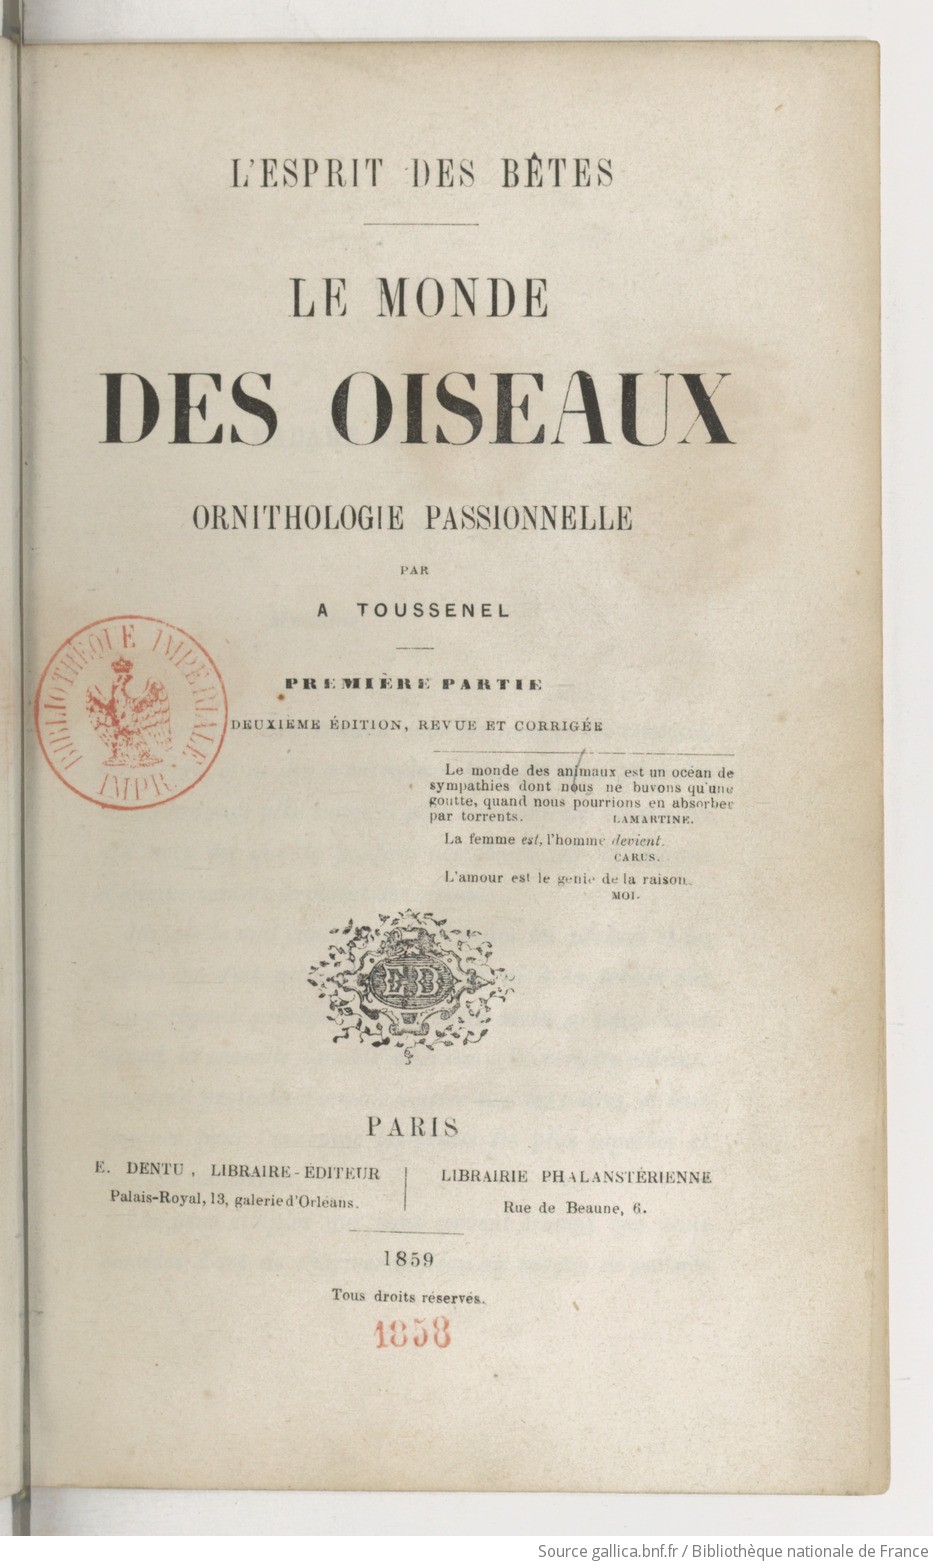 Le monde des oiseaux : ornithologie passionnelle (2e édition) / par A. Toussenel,...